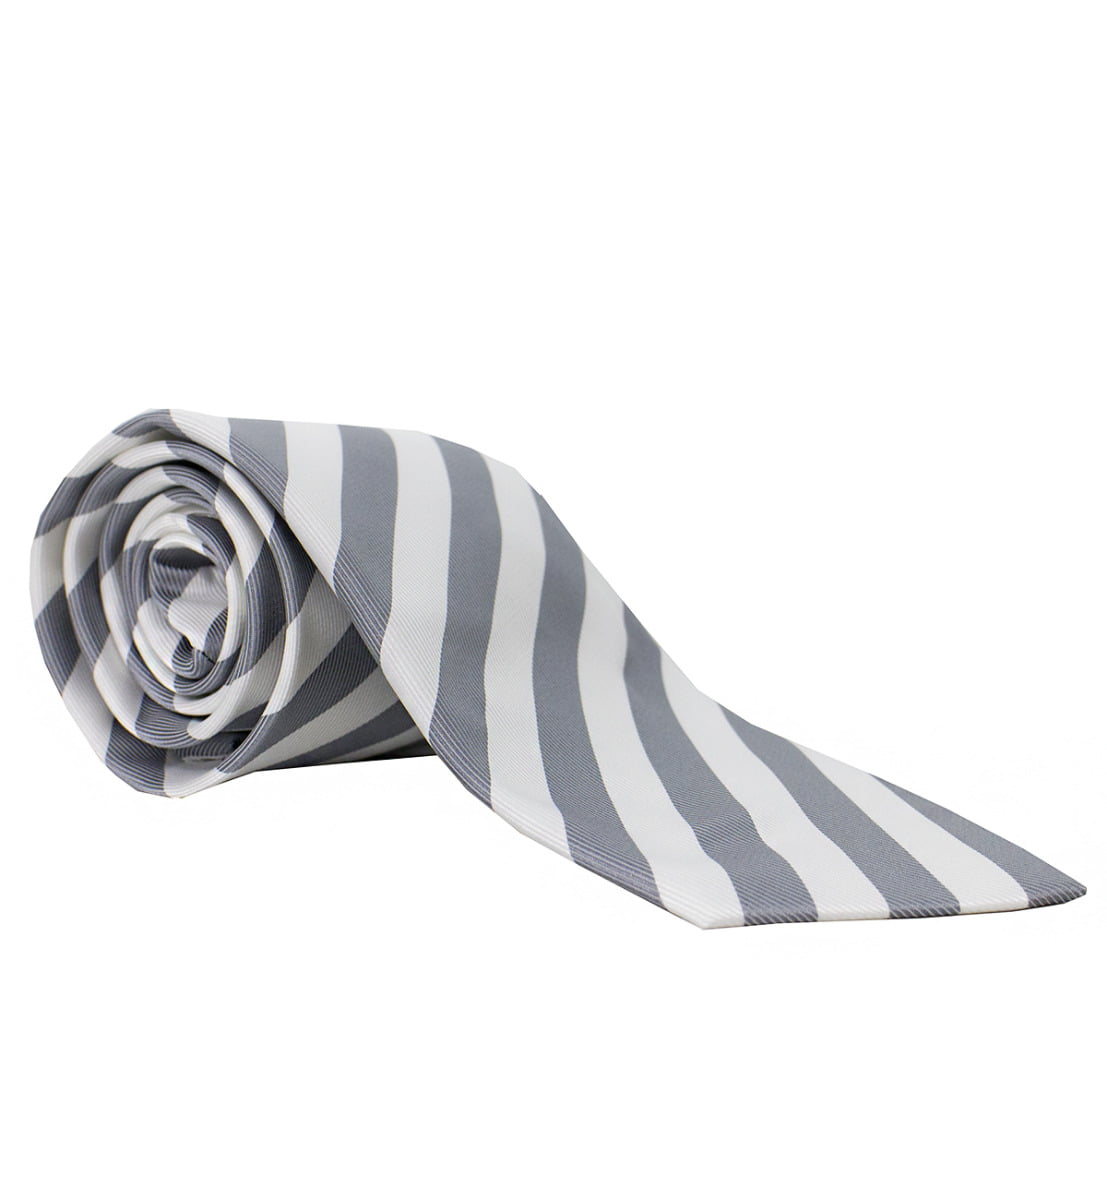 Cravatta uomo grigia righe diagonali bianche 8cm di larghezza made in italy